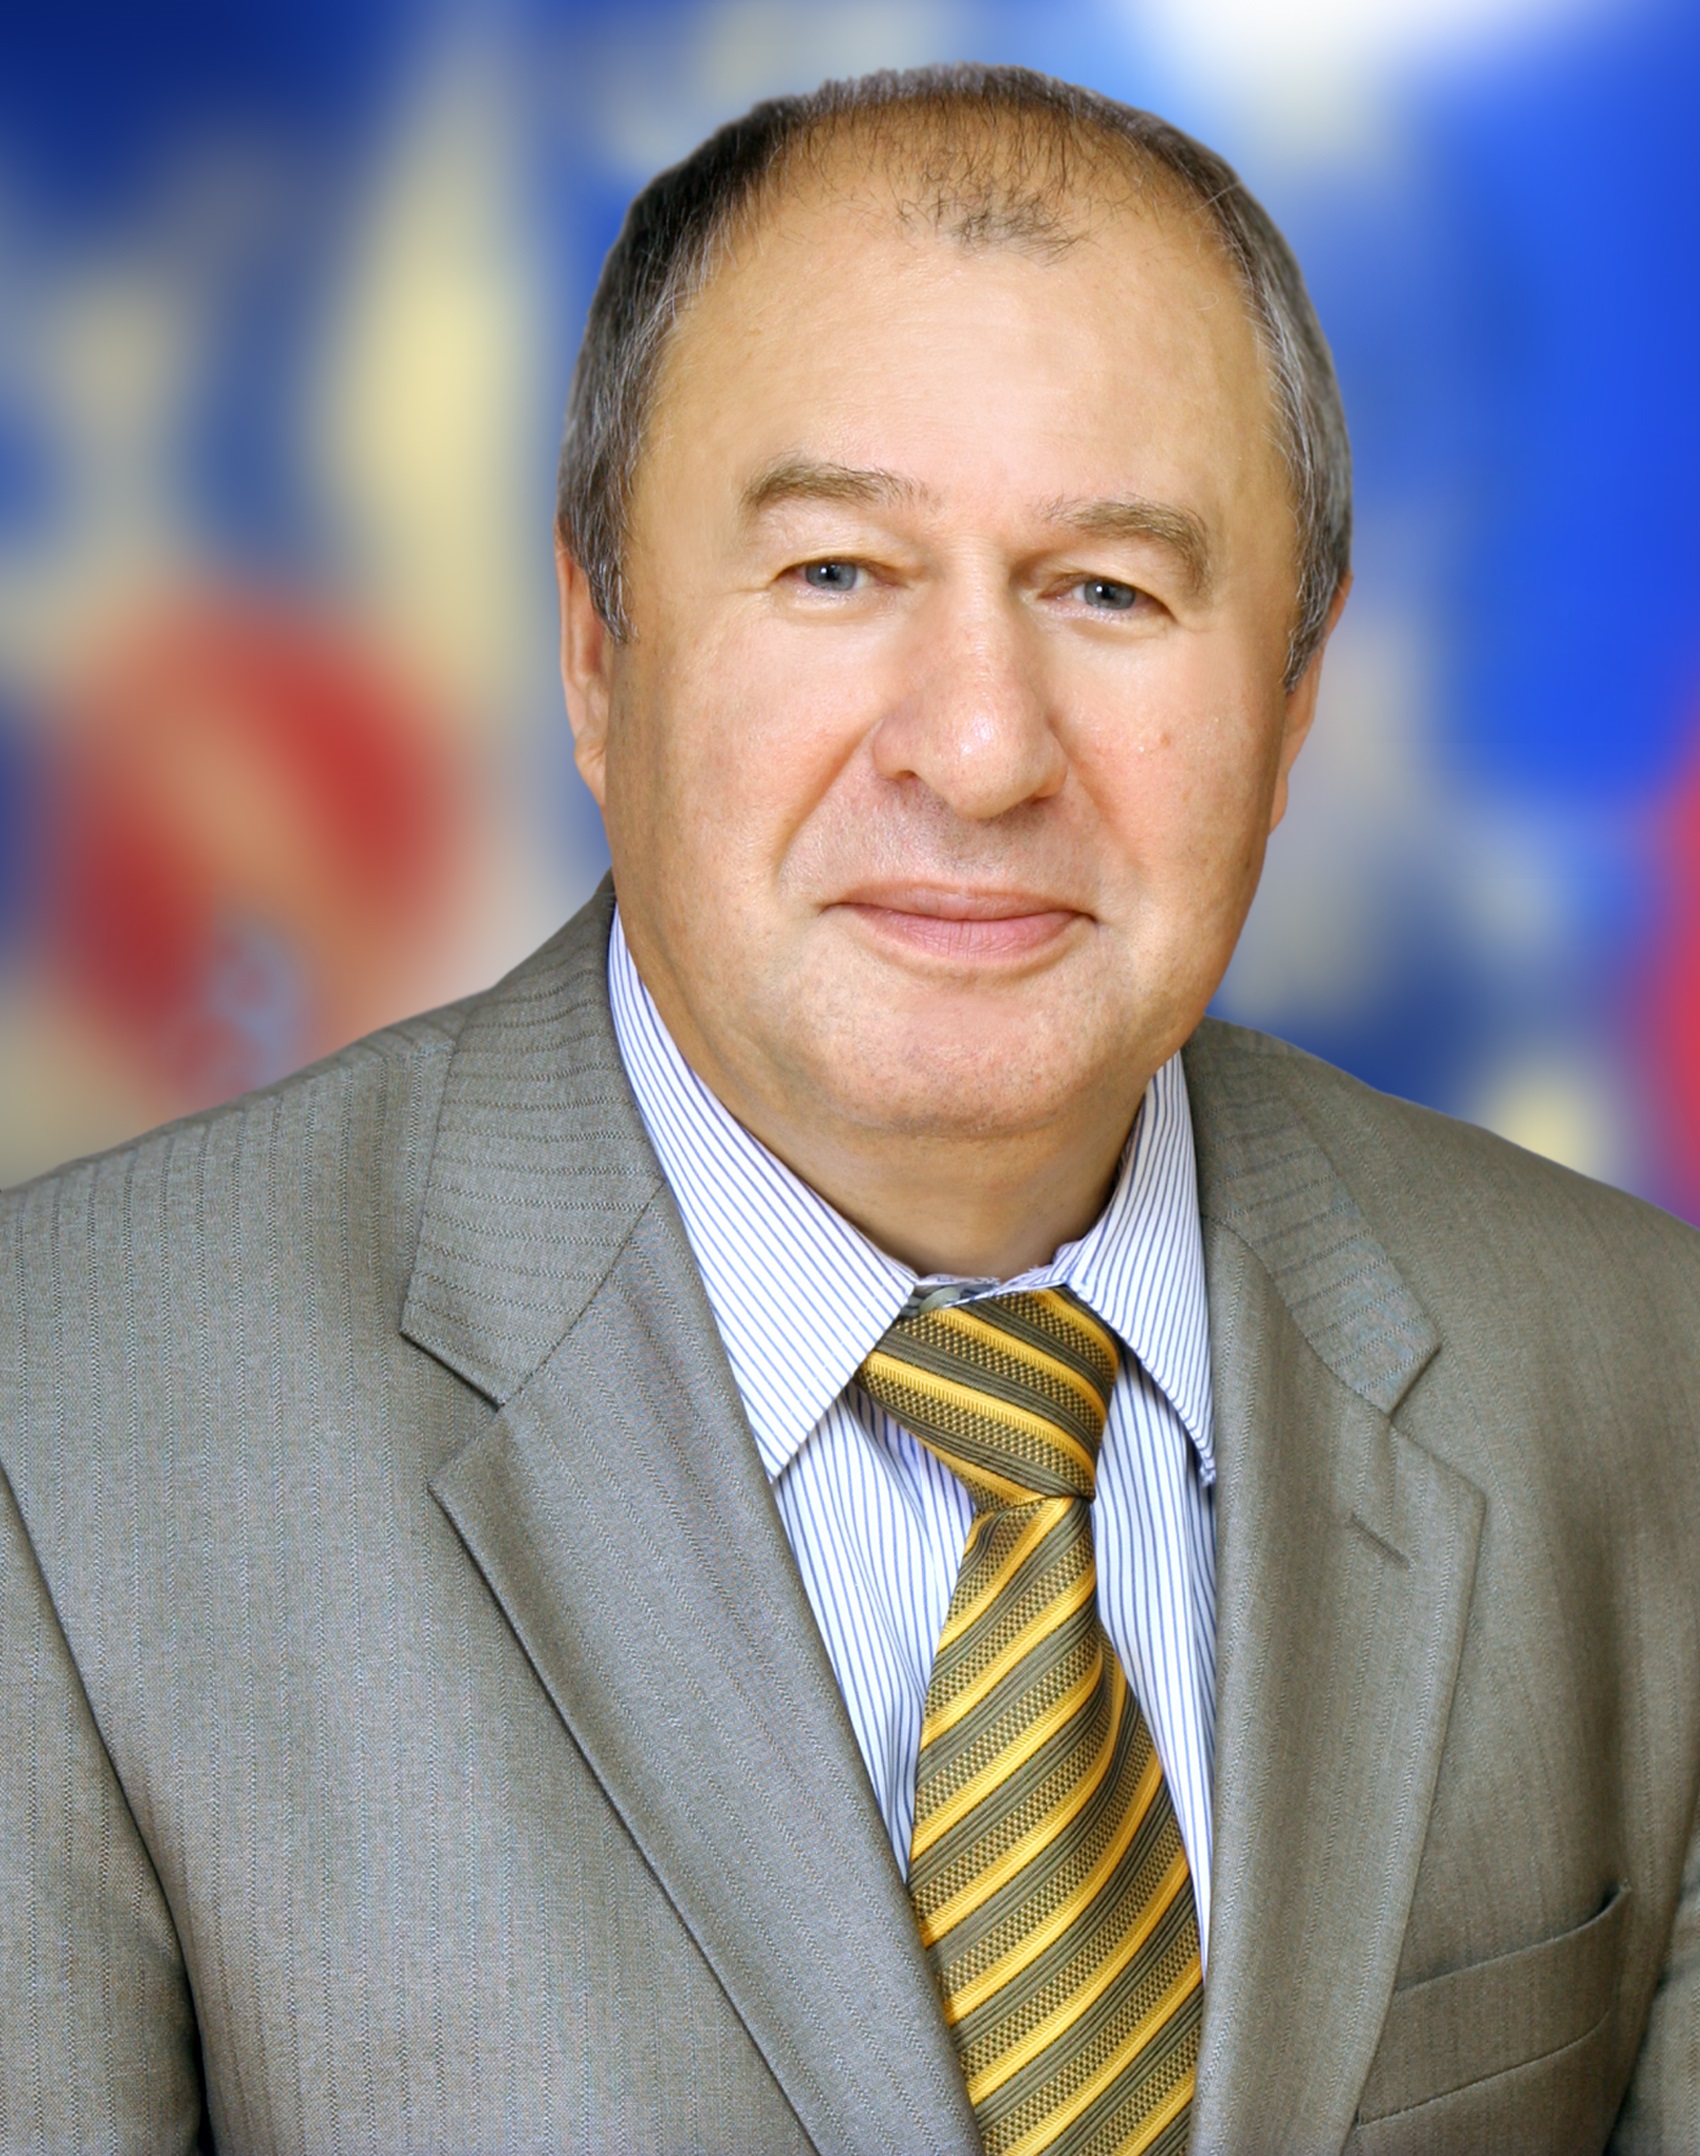                         Gavrilov Boris
            